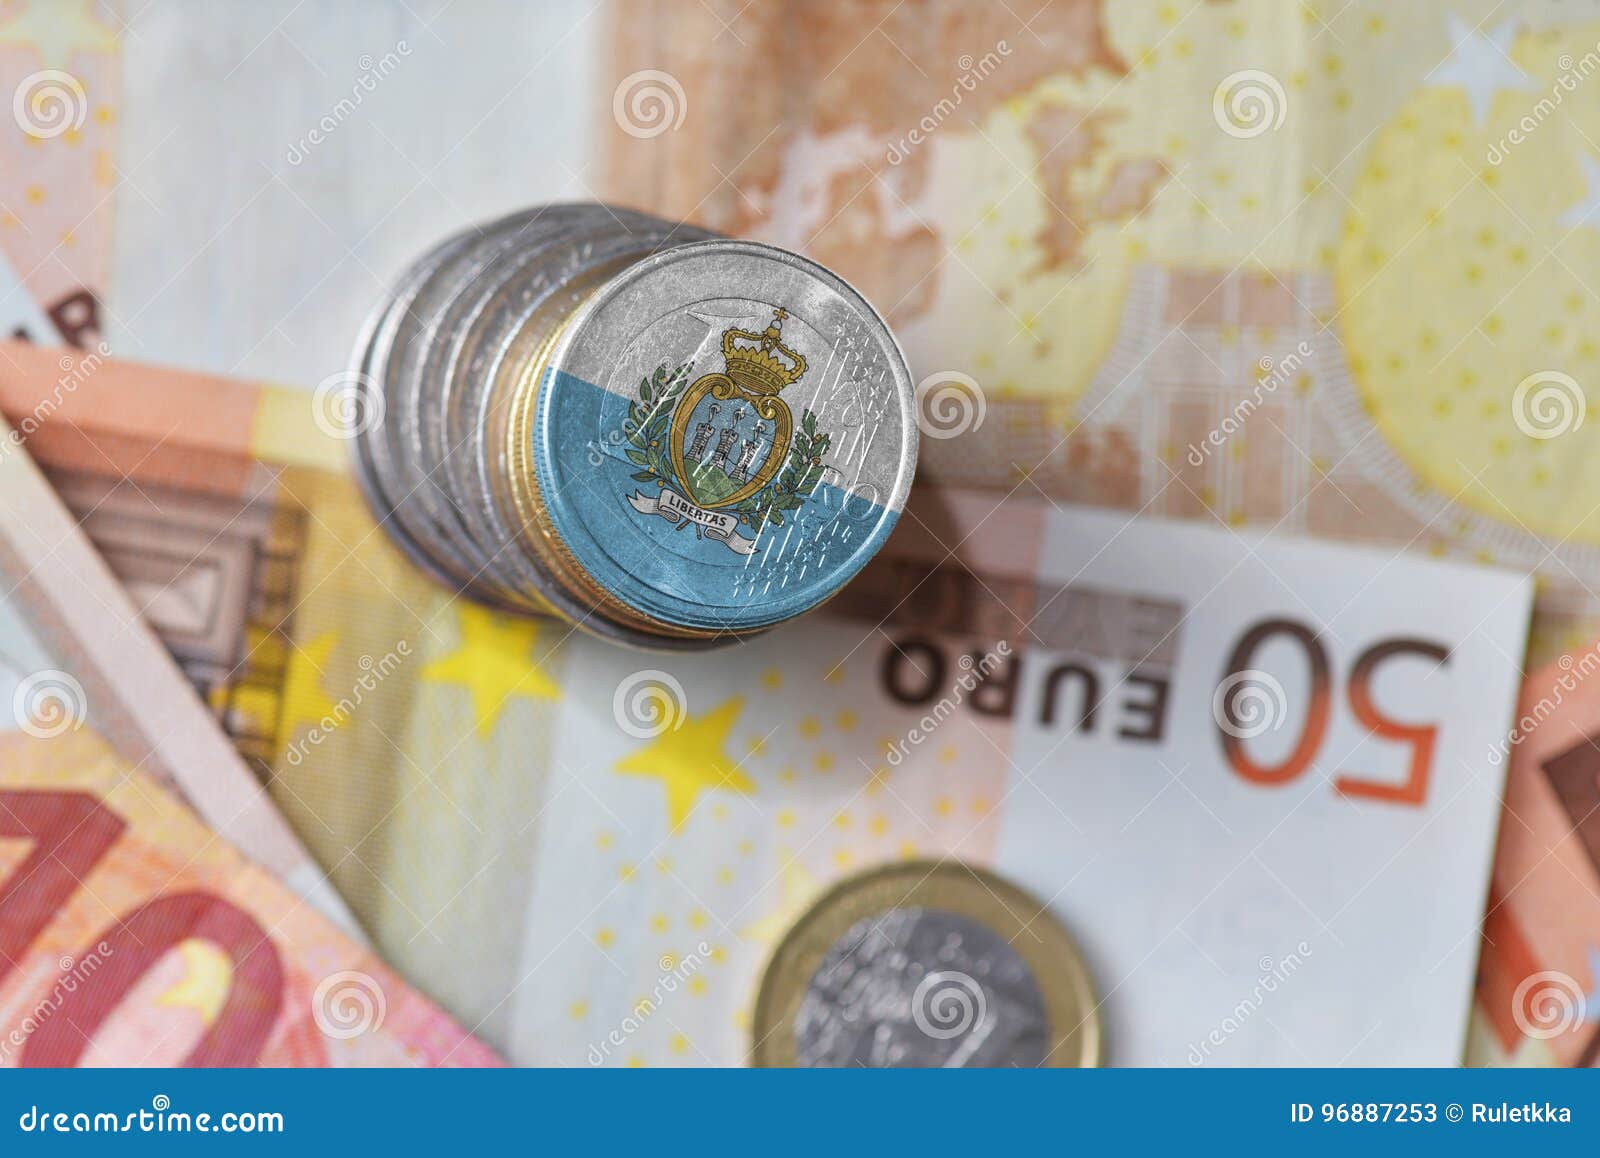 Send Money to San Marino | TransferGo